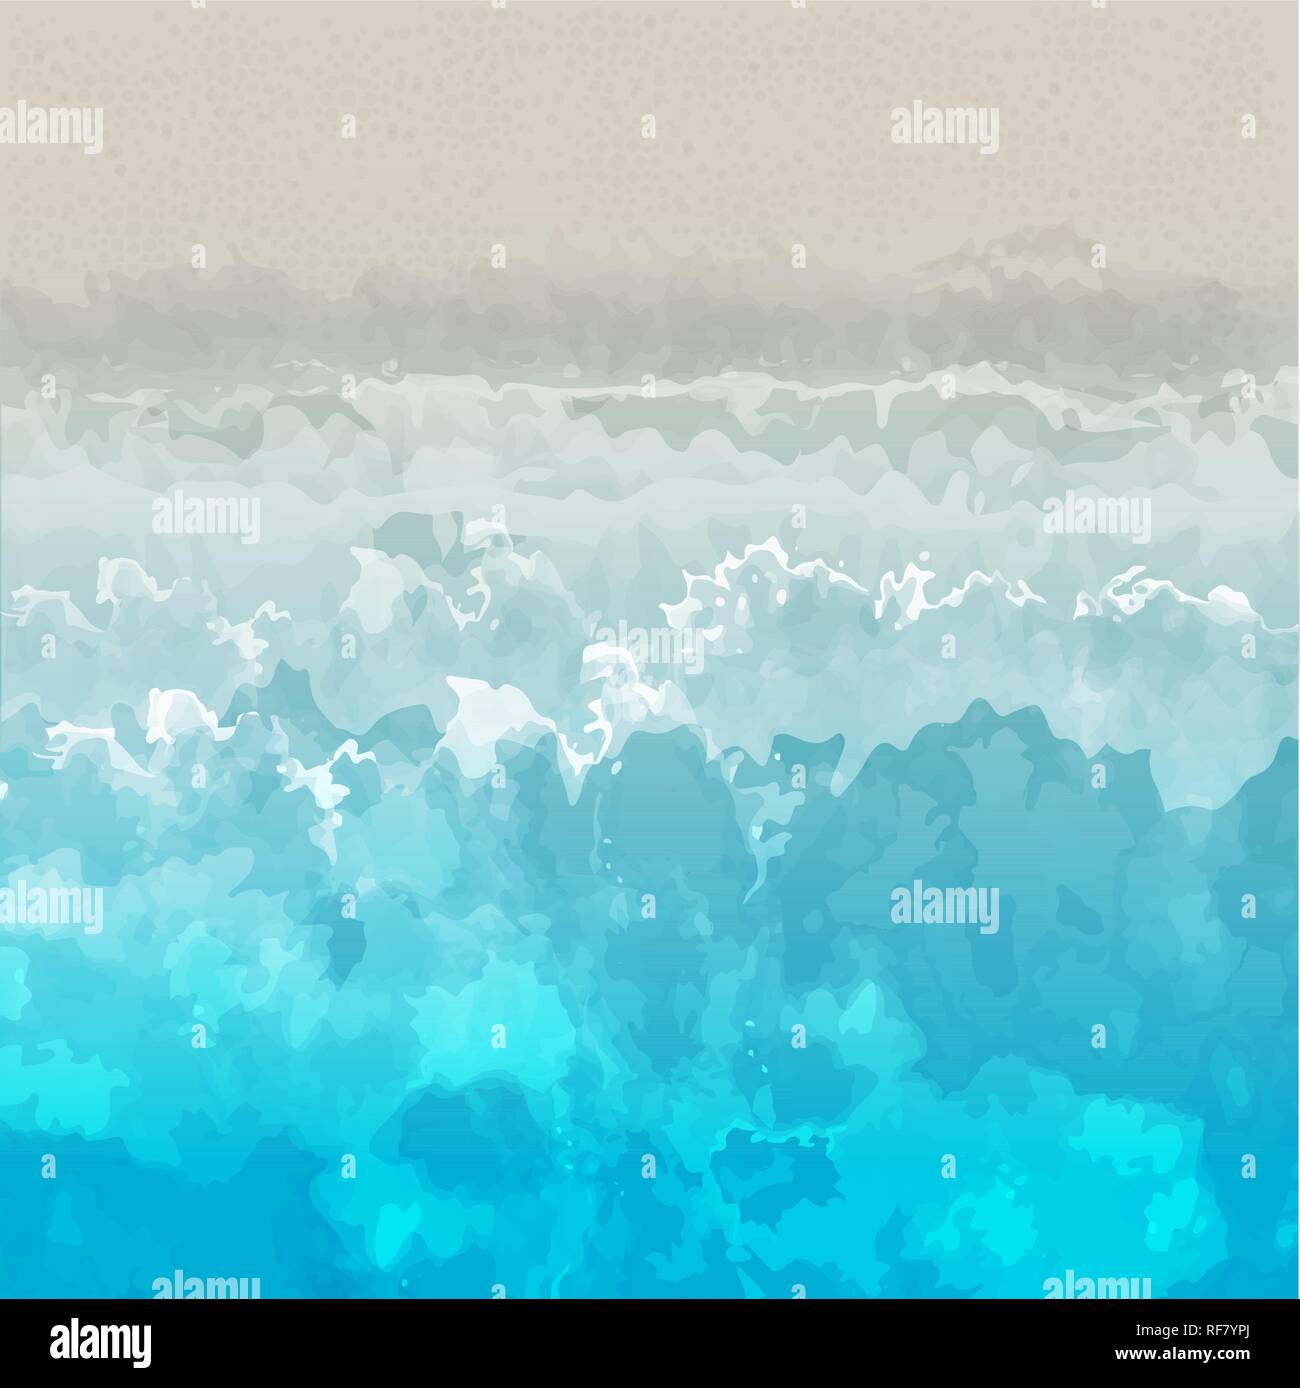 Strand vector Hintergrund, auf dem Wasser und Sandstrand, hell und bunt. Für Karten, Banner, Wallpaper, etc. geeignet. Stock Vektor